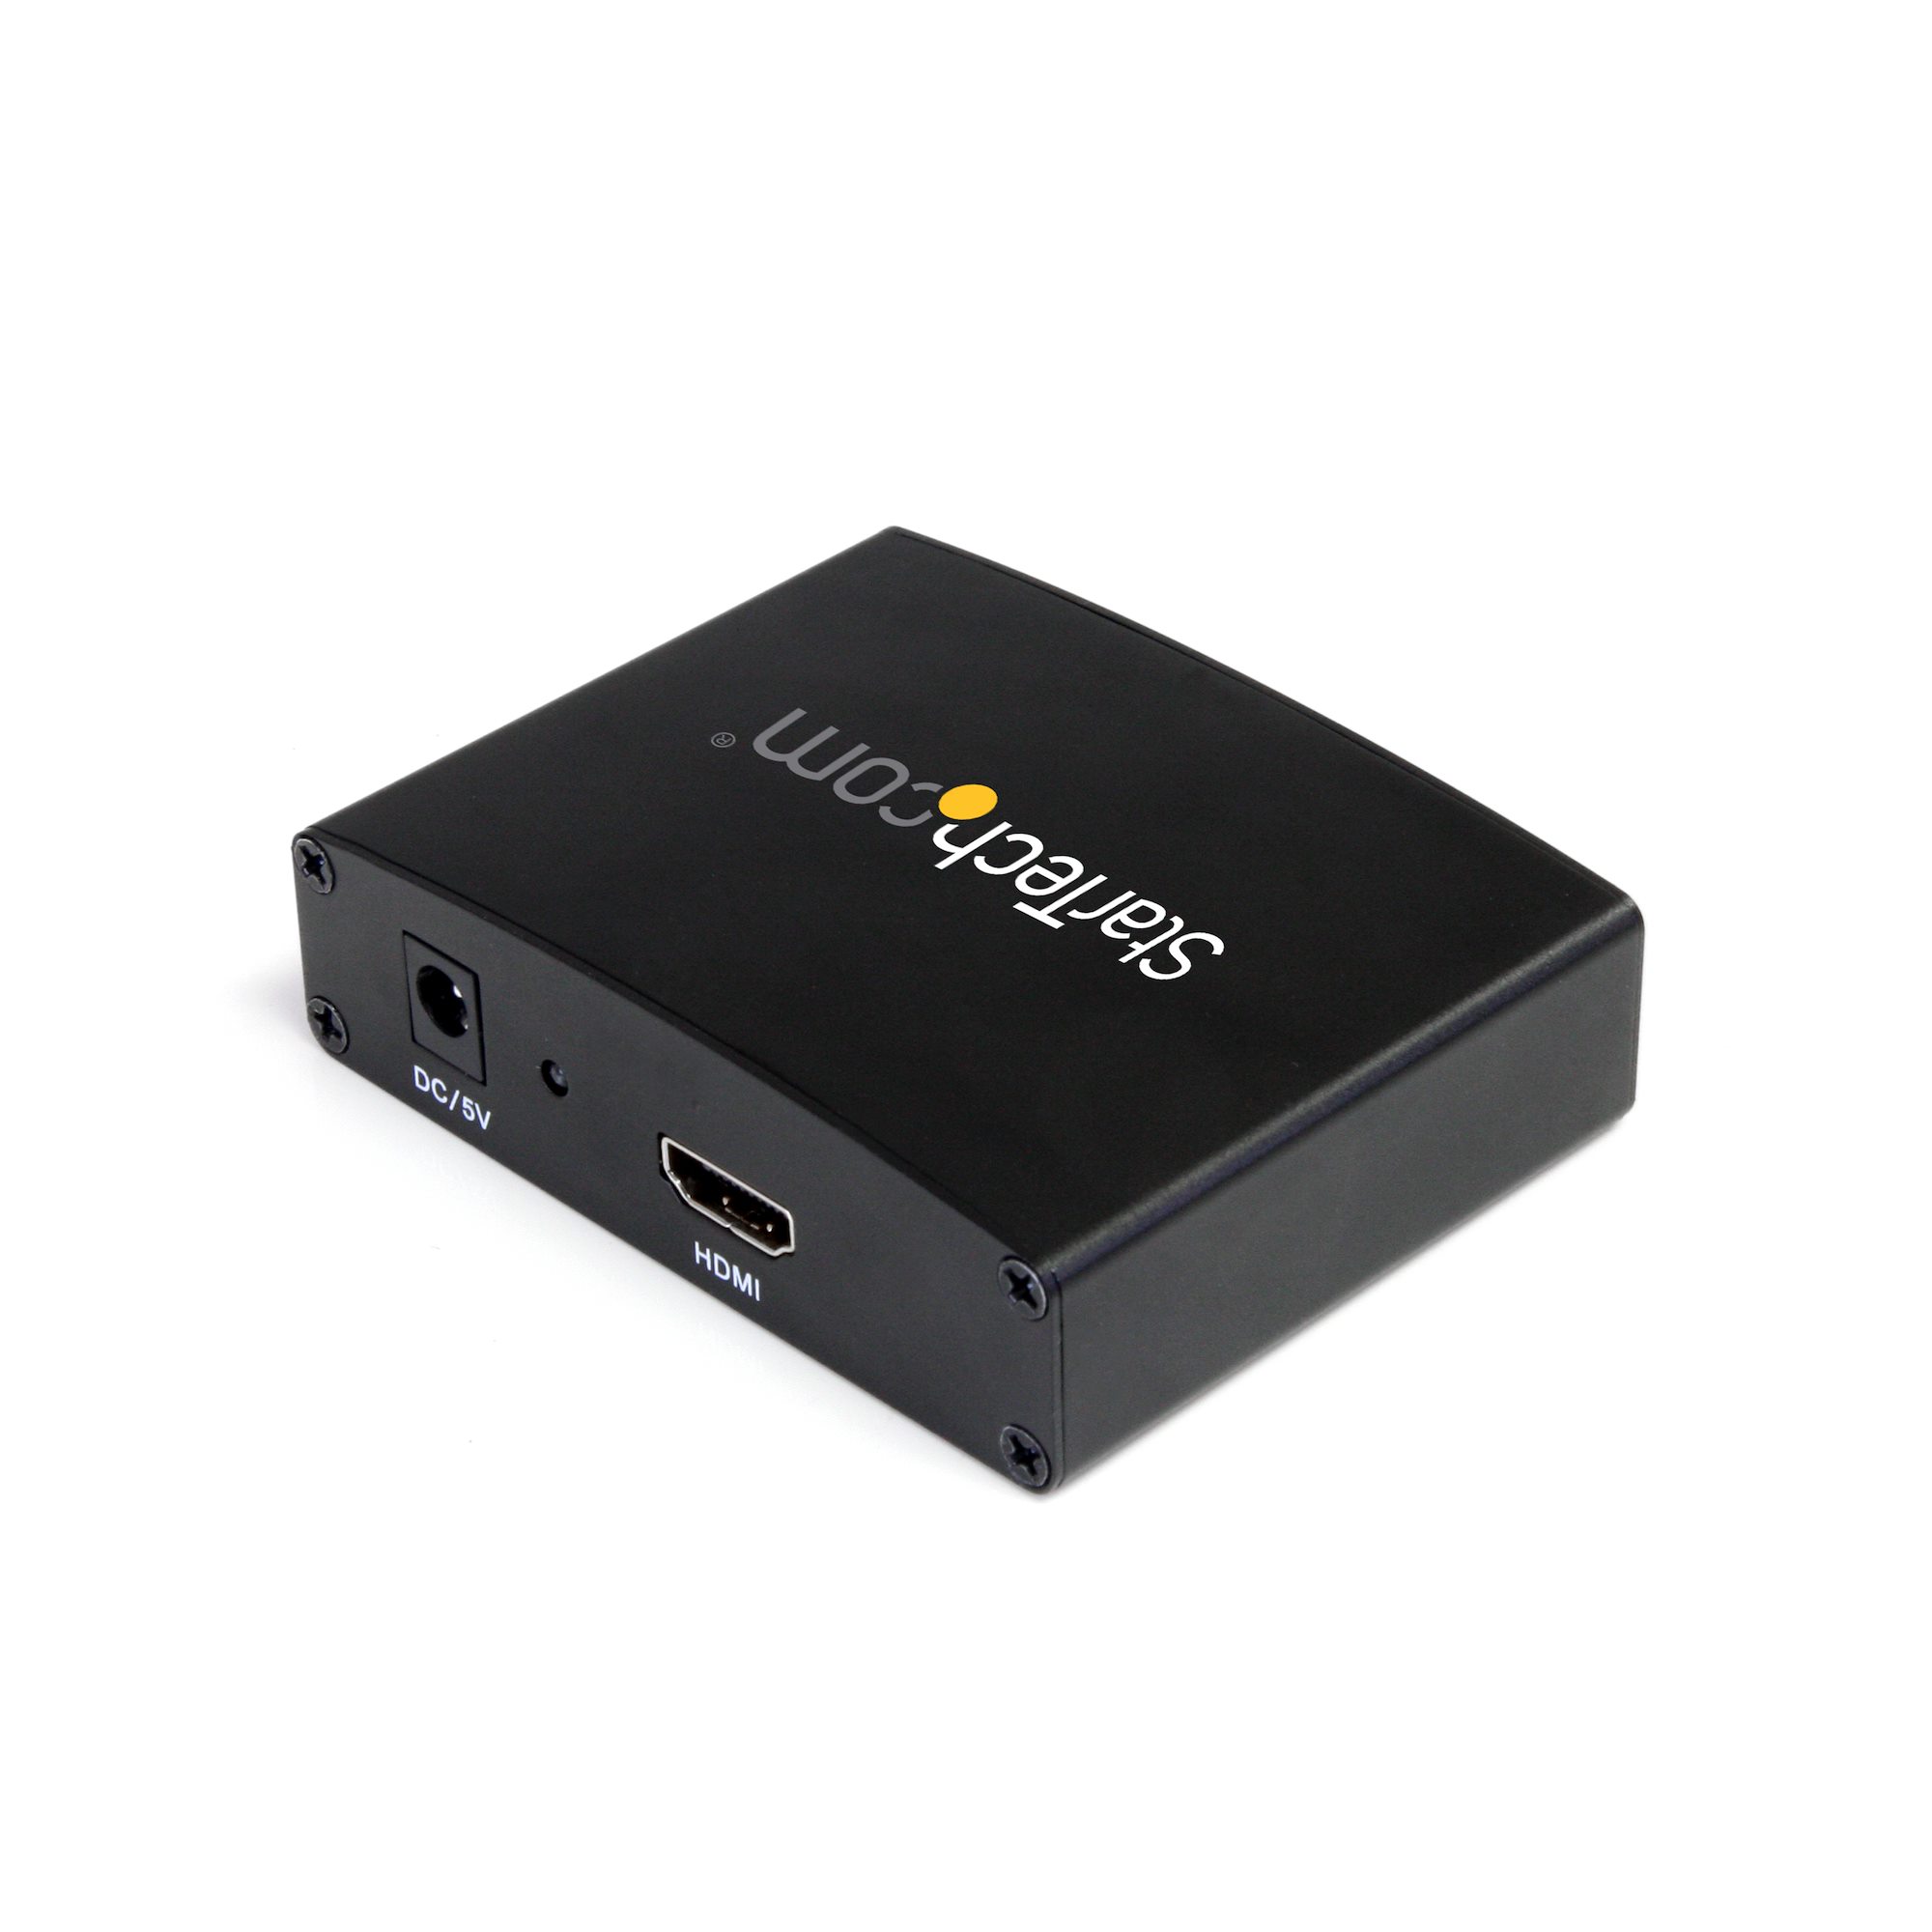  StarTech.com Adaptador de video DVI a HDMI con alimentación USB  y audio - Convertidor DVI-D a HDMI - 1080p (DVI2HD) : Electrónica